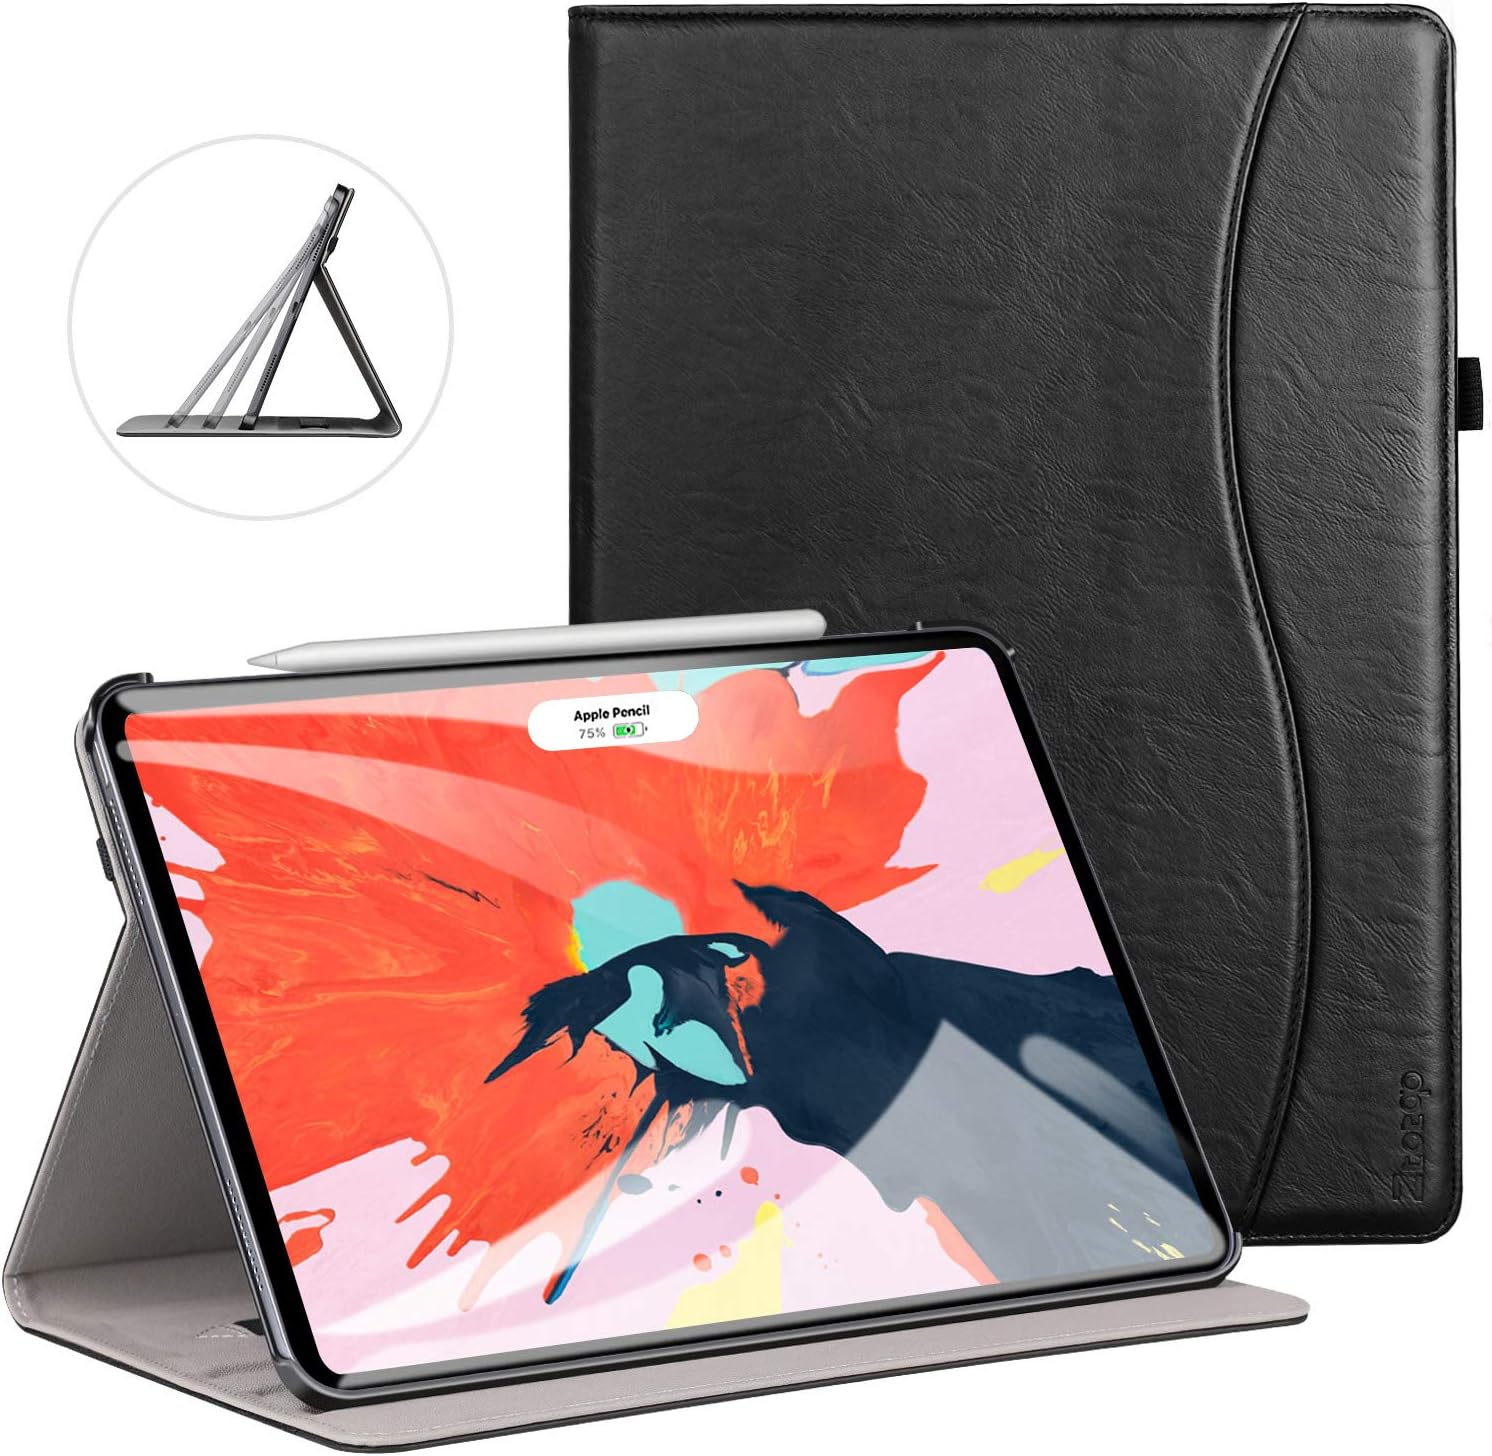 iPad Pro 12.9 2018 Premium Leather Folio Case